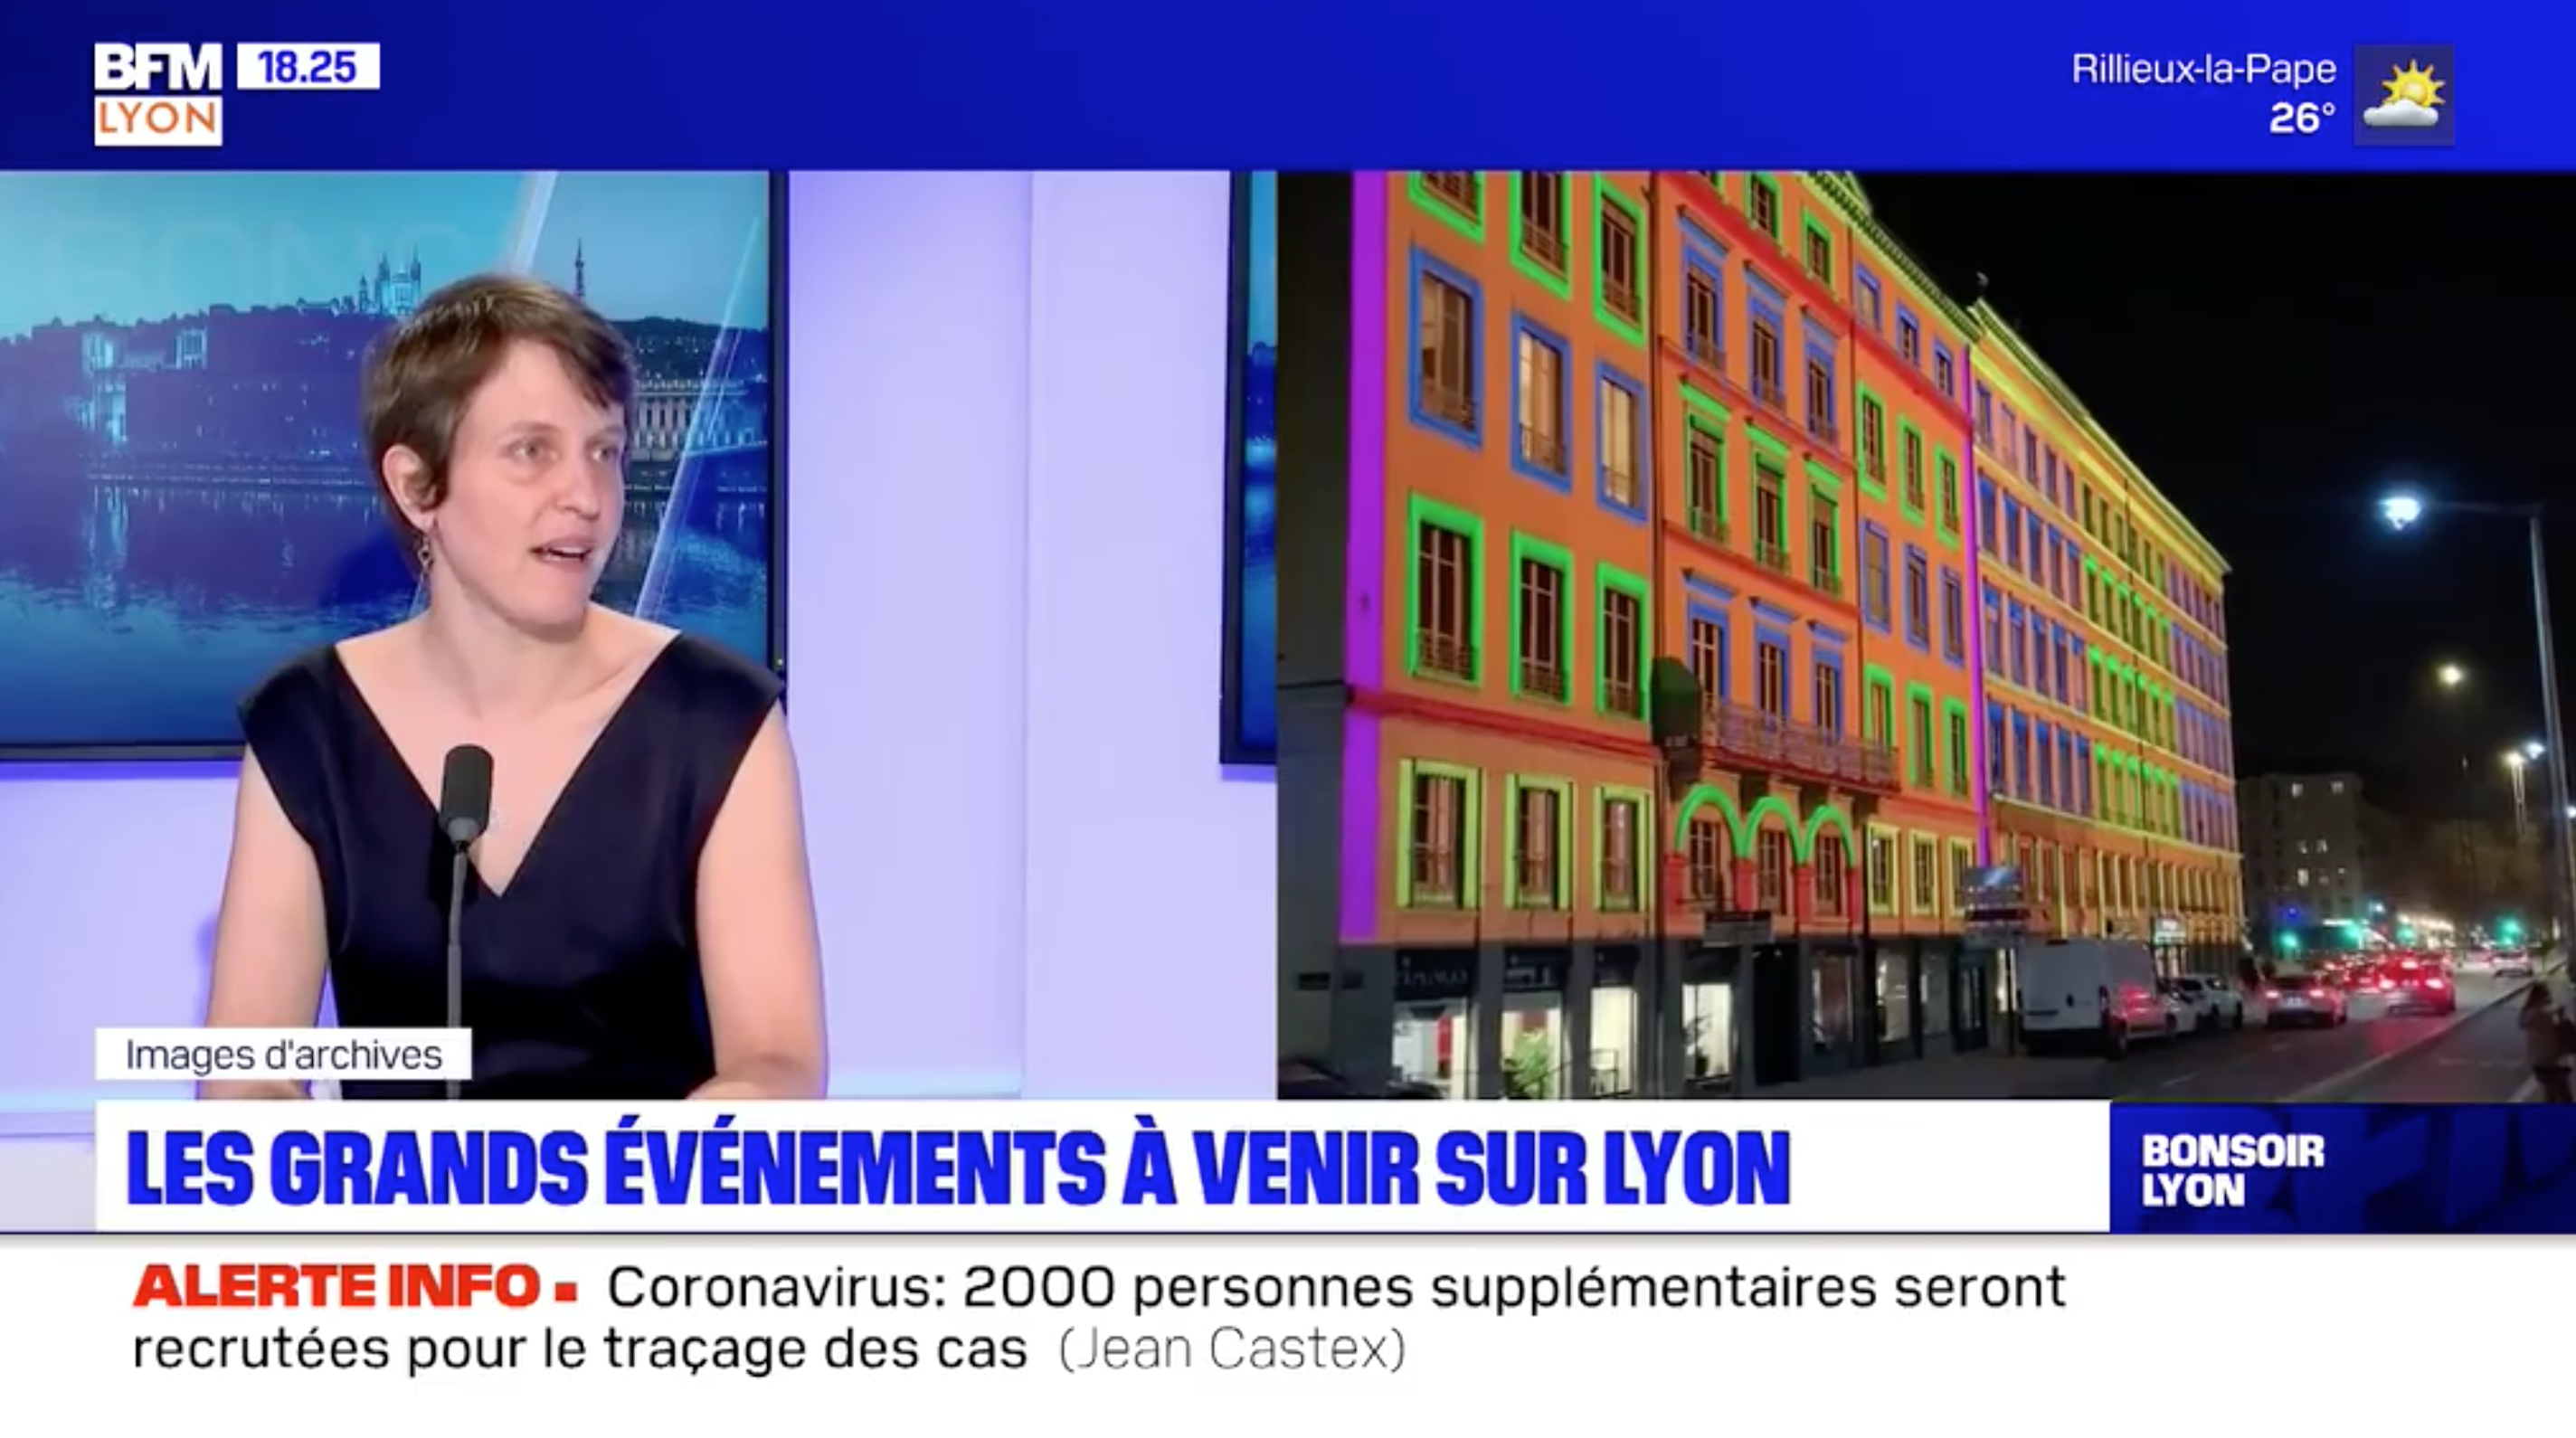 La ville de Lyon veut privilégier les événements écoresponsables